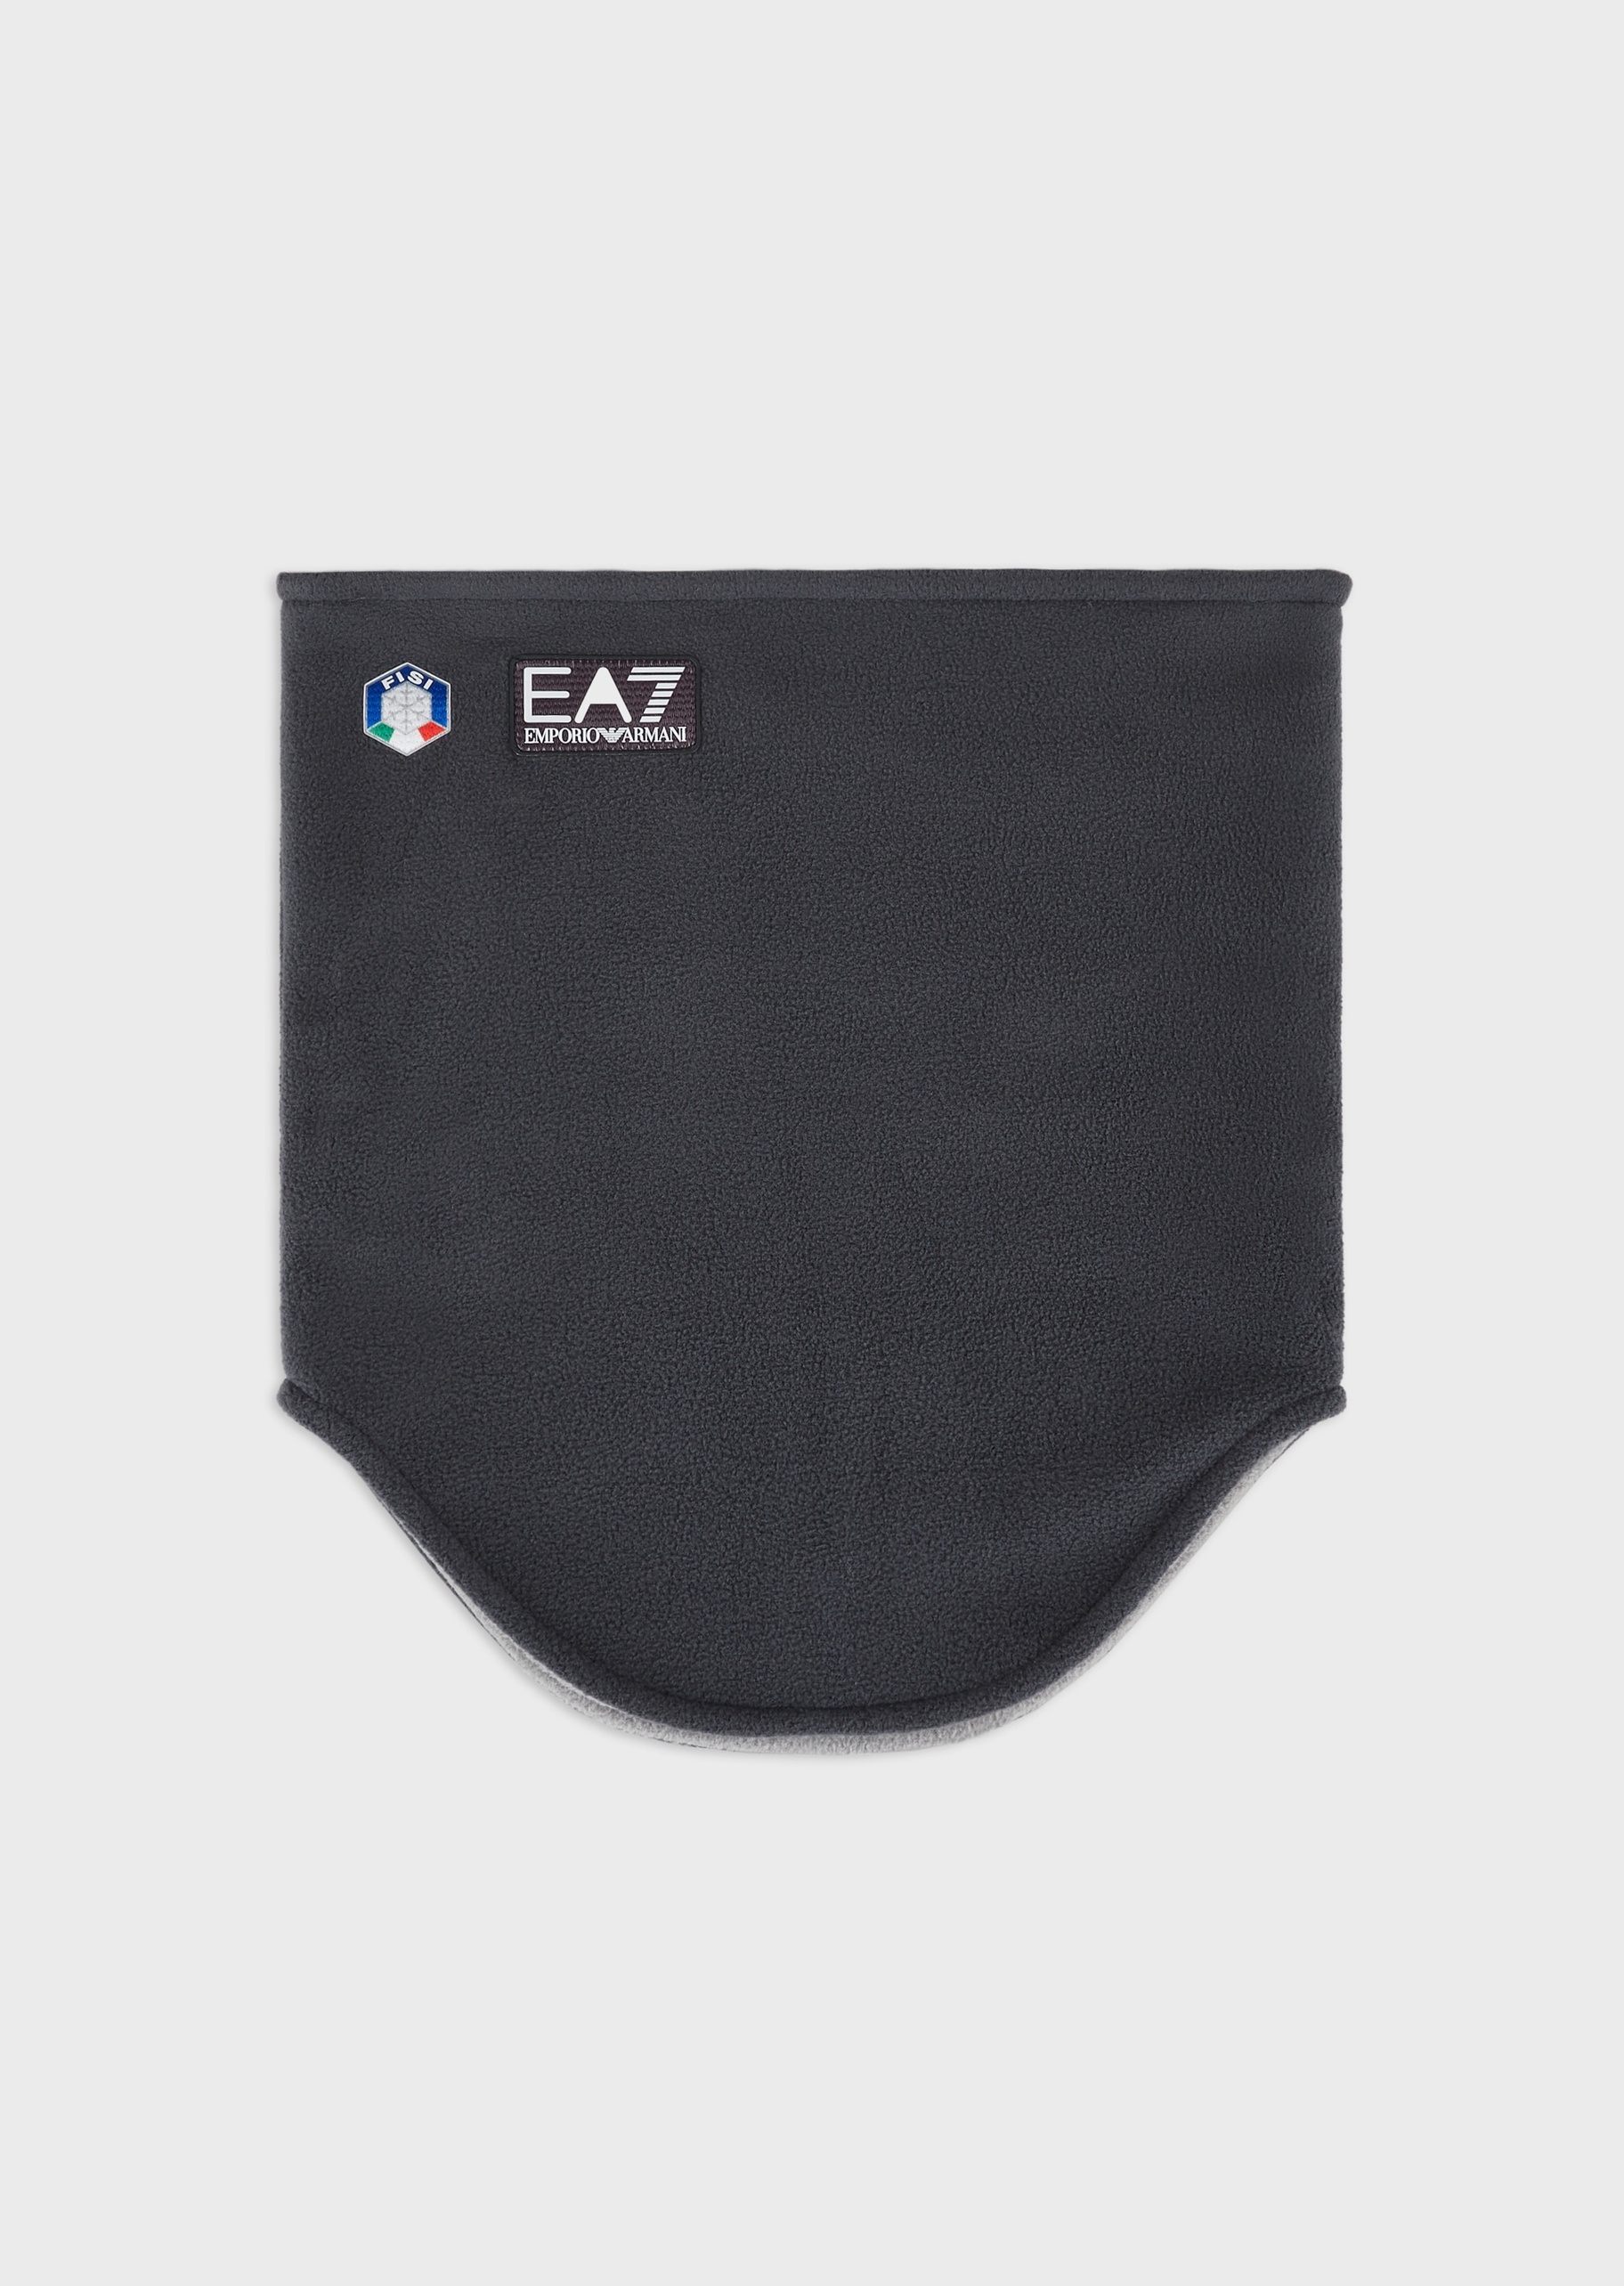 EA7 闭合式护颈运动围巾